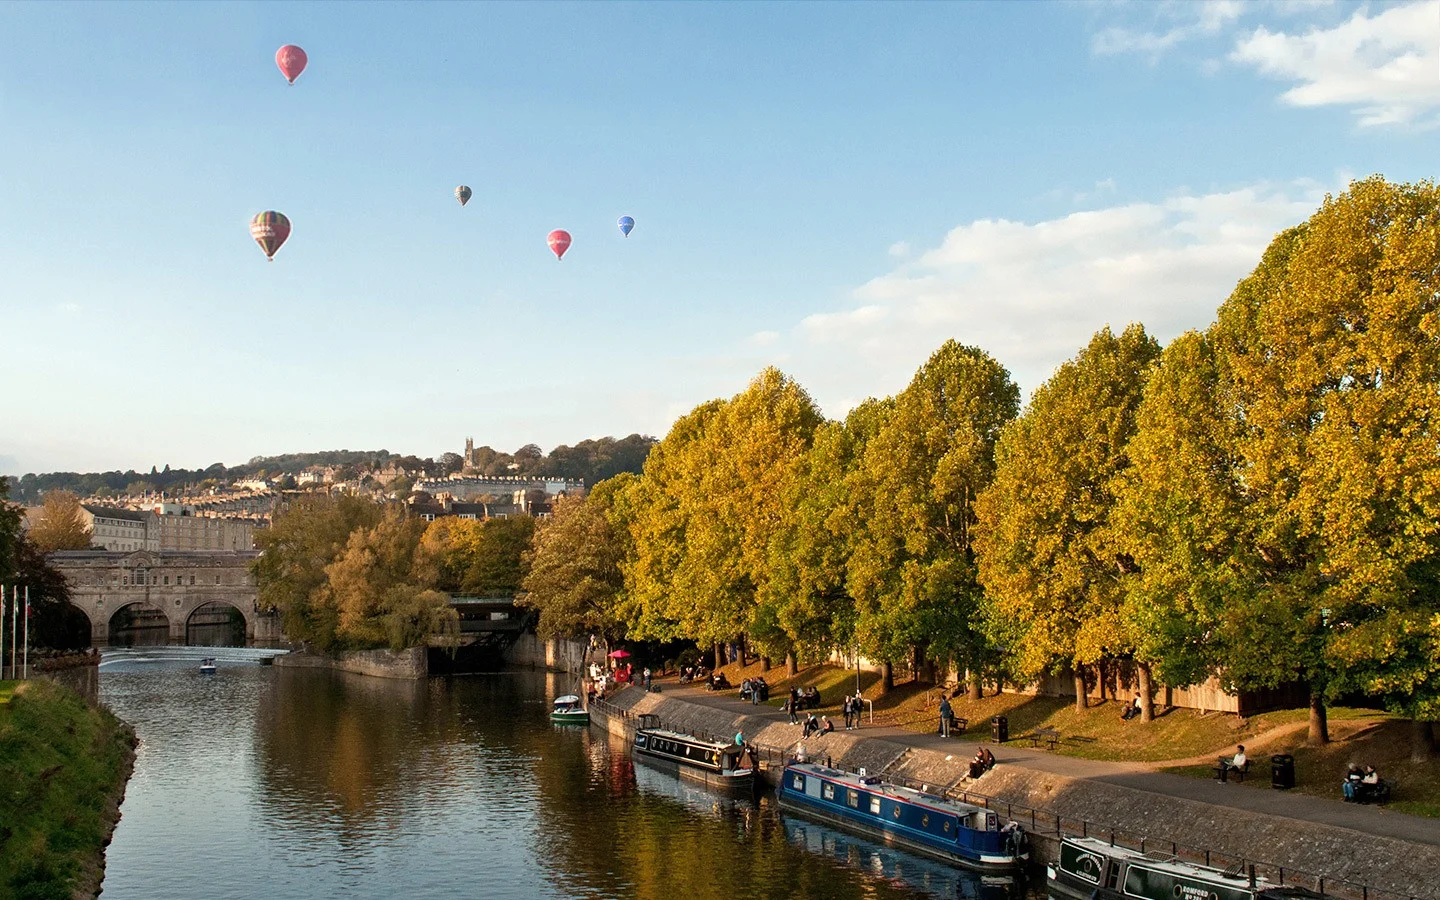 Balloon ride over Bath, England